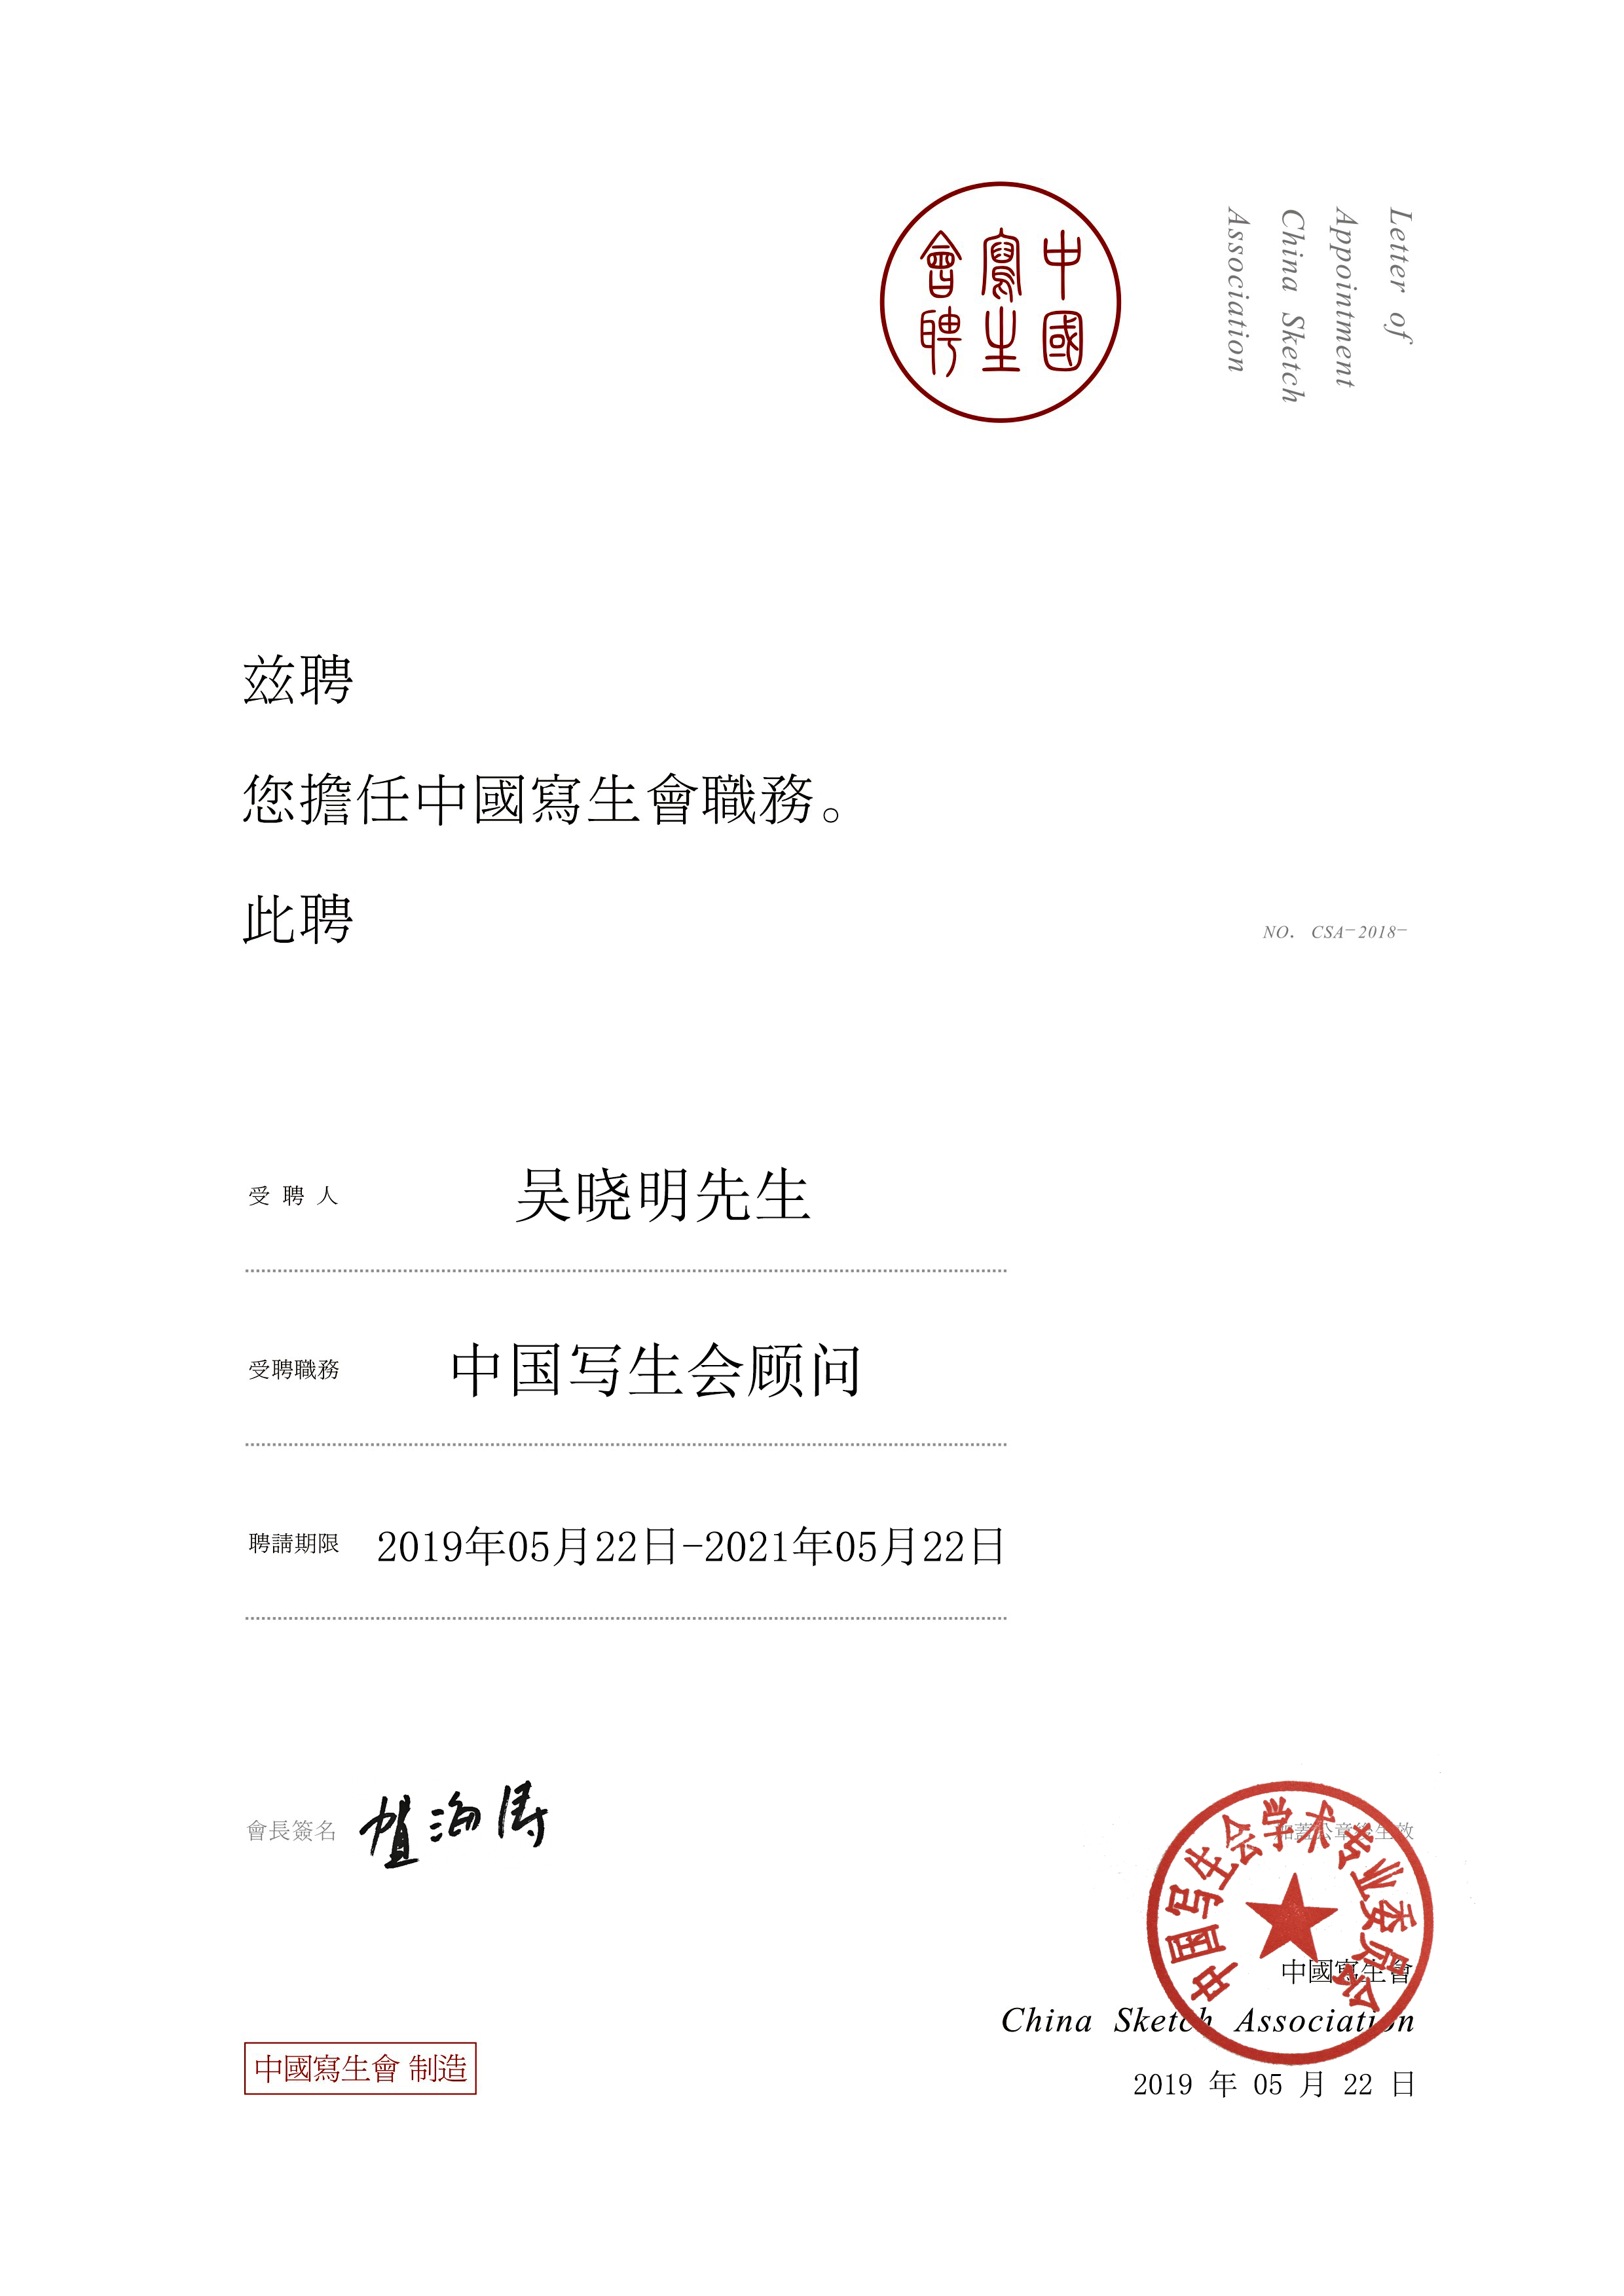 君度集团董事长吴晓明先生接受中国写生会顾问聘书